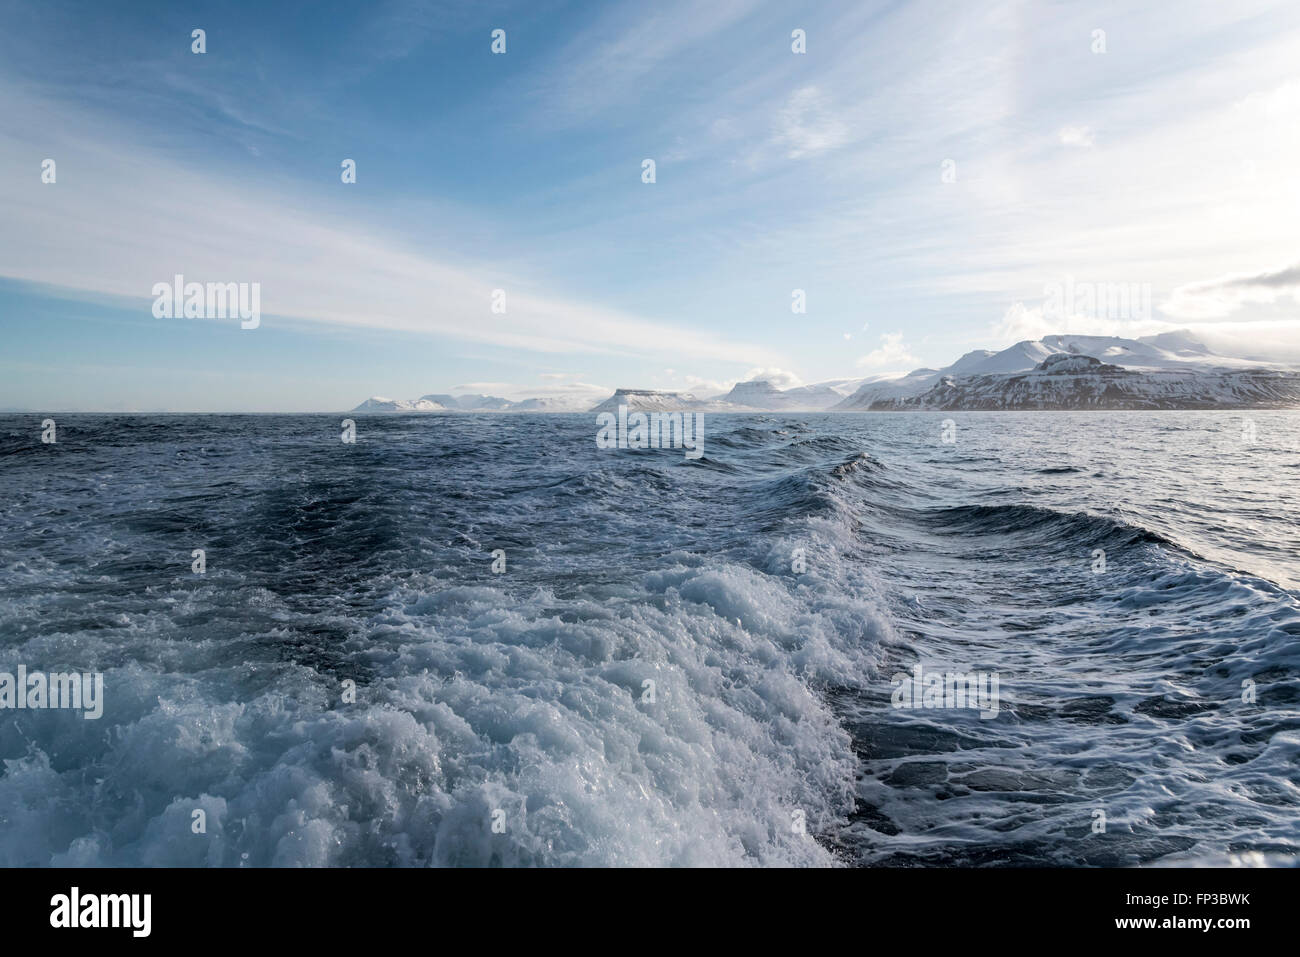 Una vista da una barca che guardando indietro a montagne della costa islandese Foto Stock